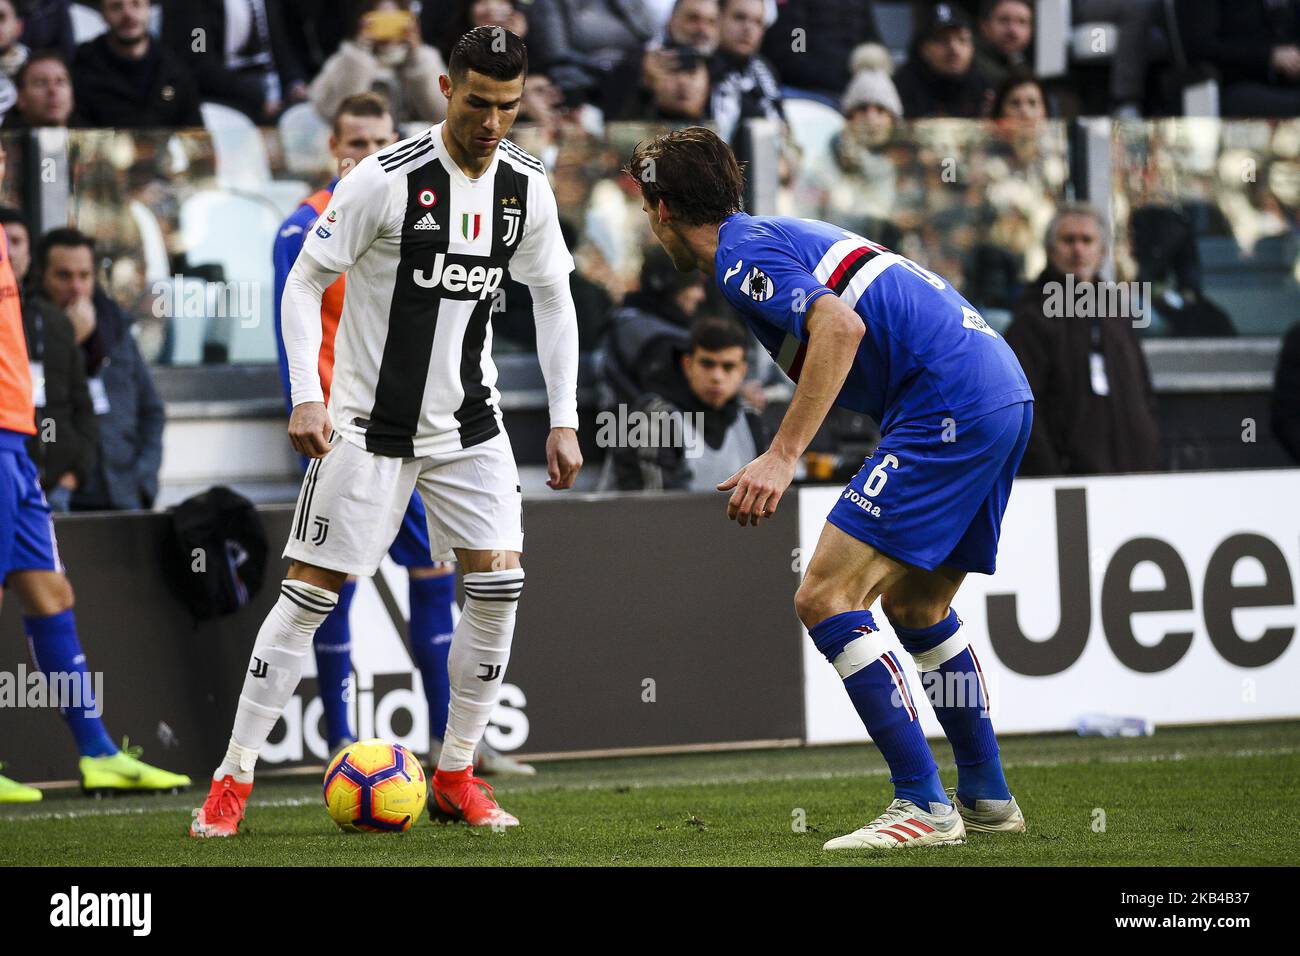 Juventus avance Cristiano Ronaldo (7) en action pendant le match de football de la série A n.19 JUVENTUS - SAMPDORIA le 29/12/2018 au stade Allianz de Turin, Italie. (Photo de Matteo Bottanelli/NurPhoto) Banque D'Images